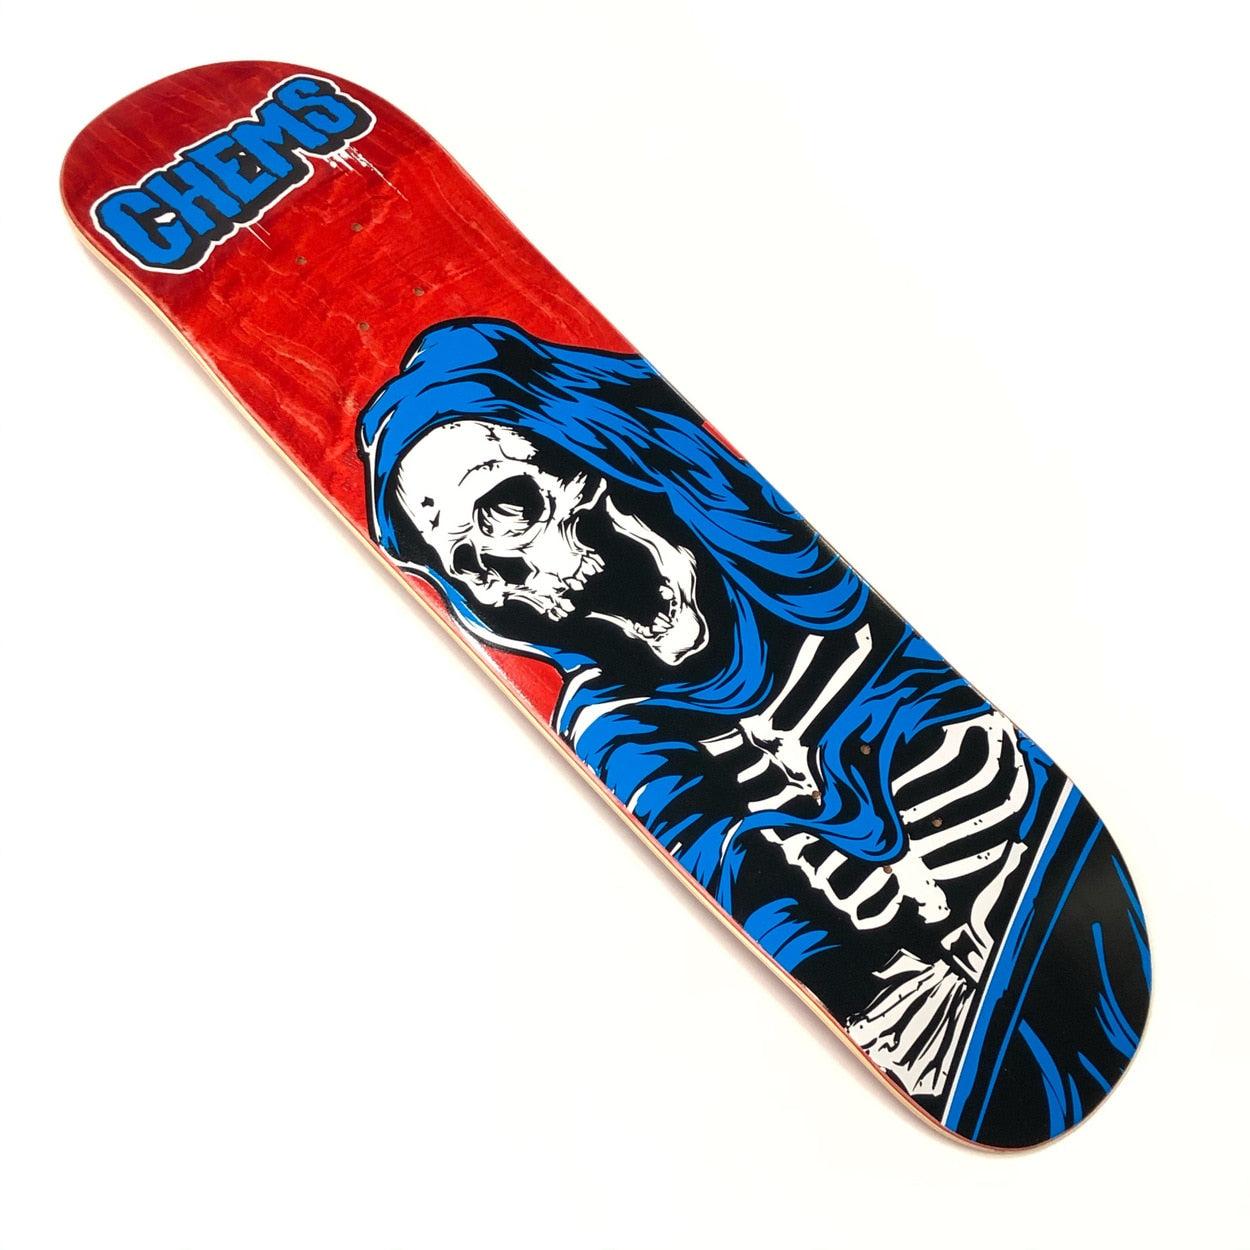 Chems Reaper Skateboard Deck - Red